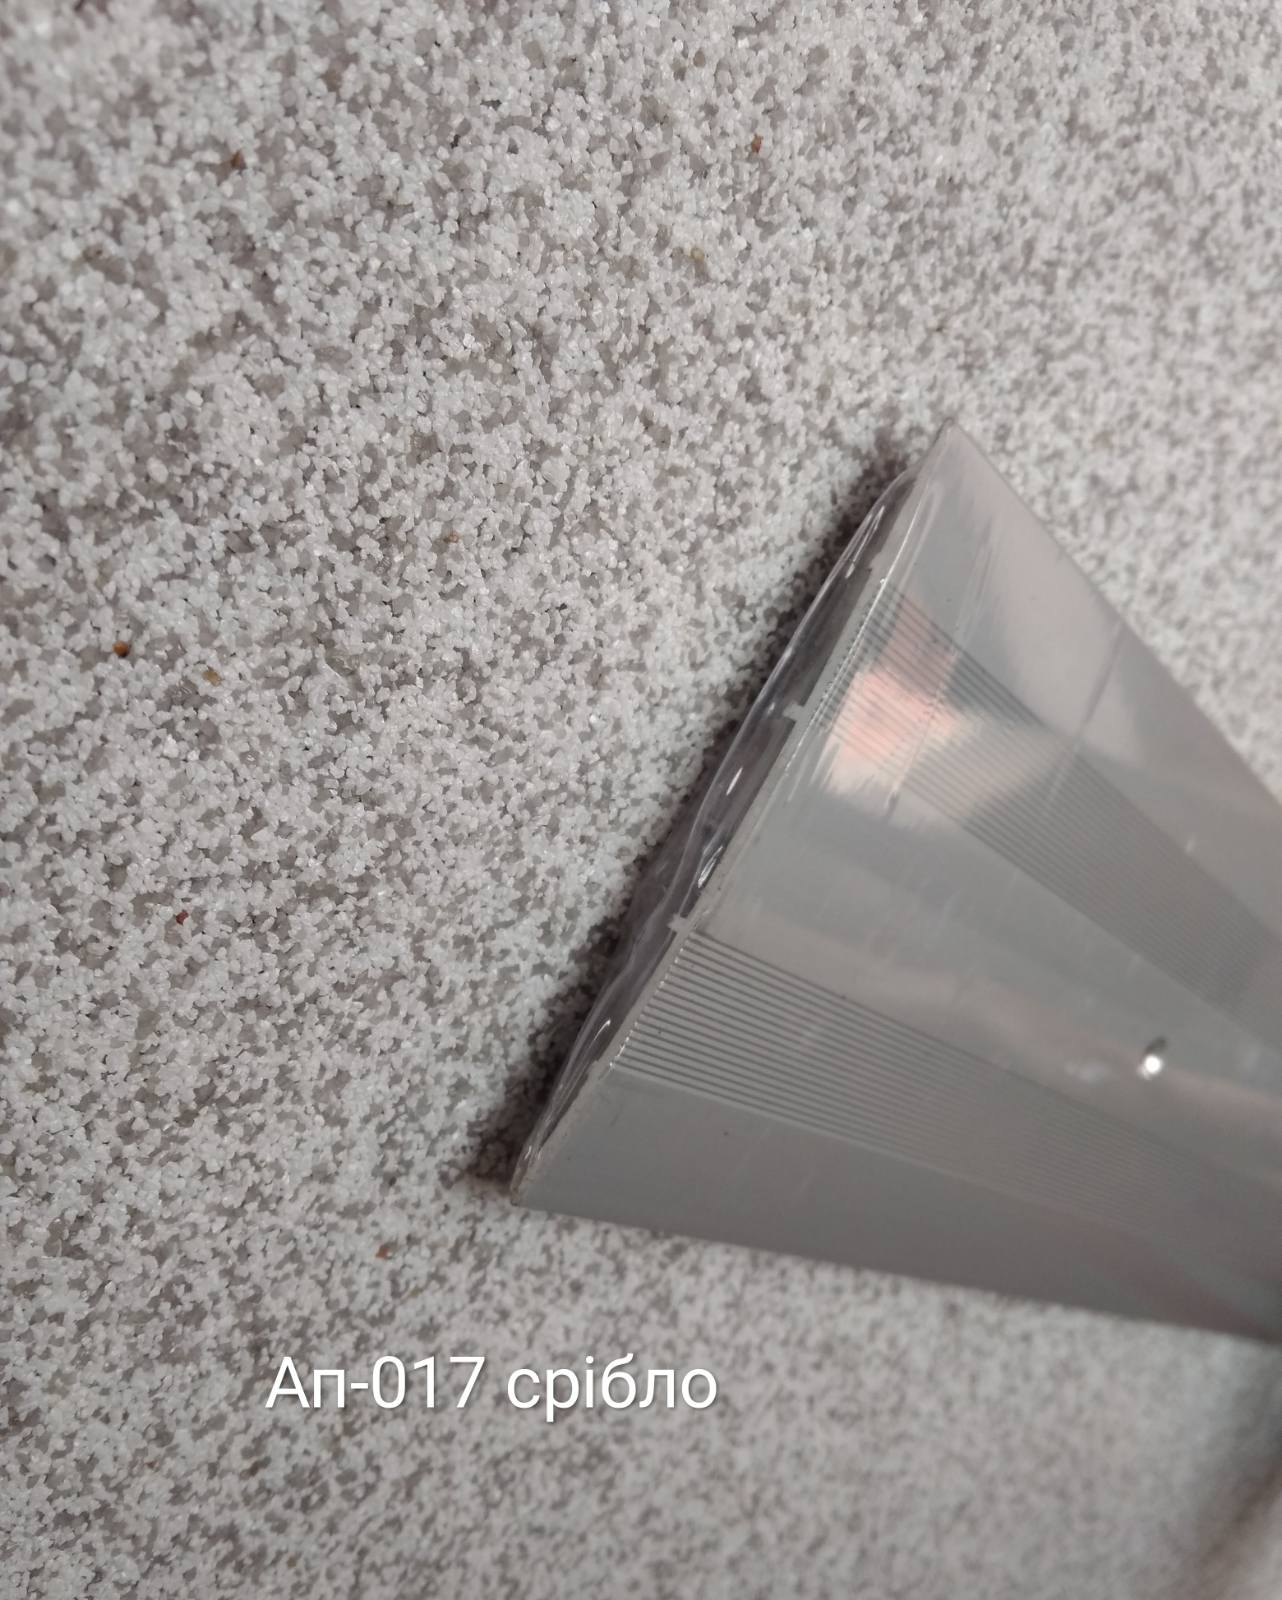  	 Порожок АП017 срібло, 1,8 м